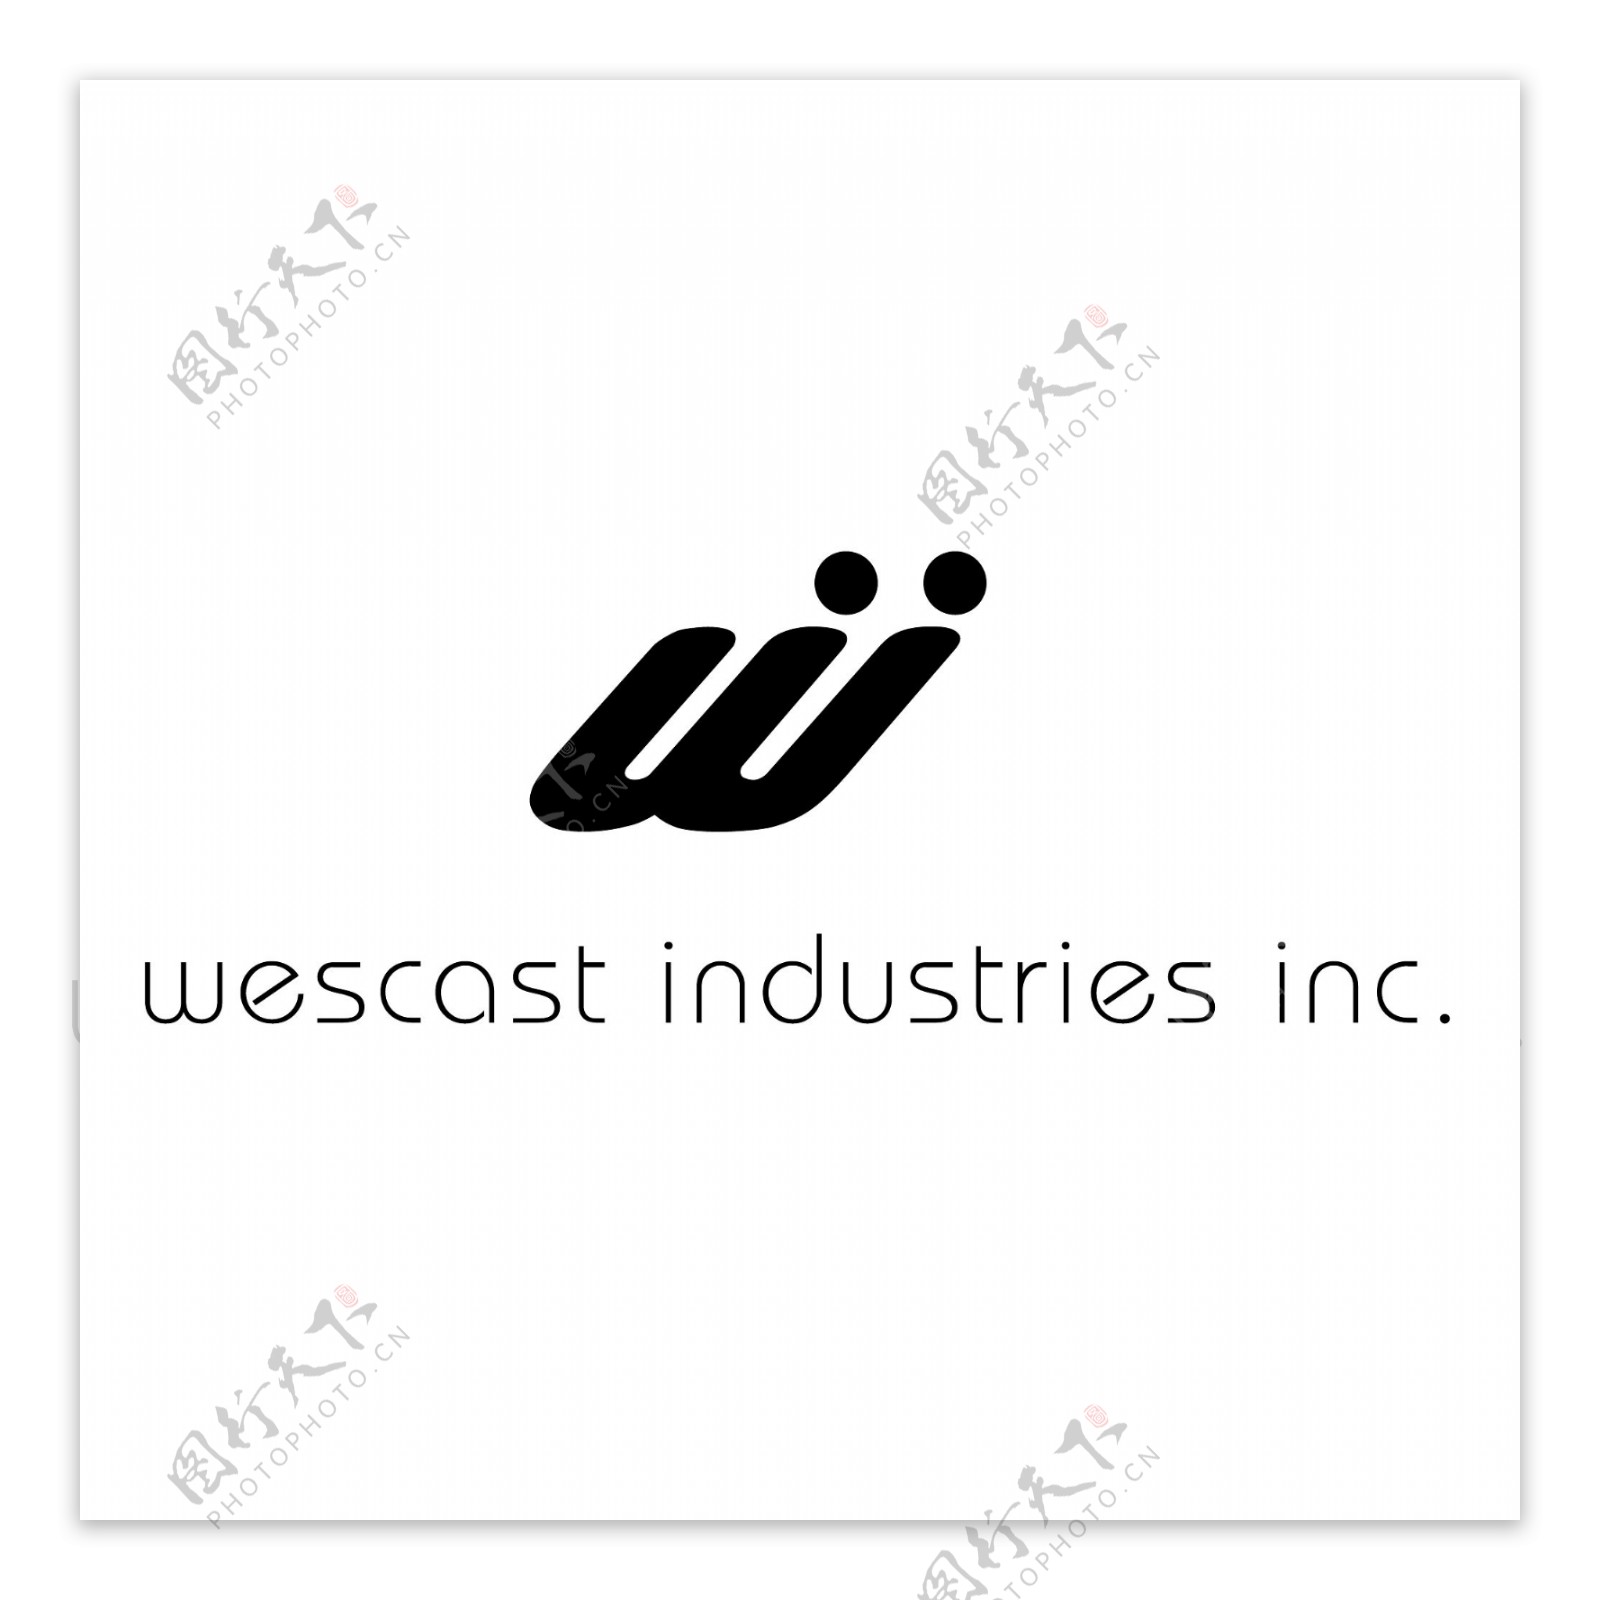 威斯卡特工业